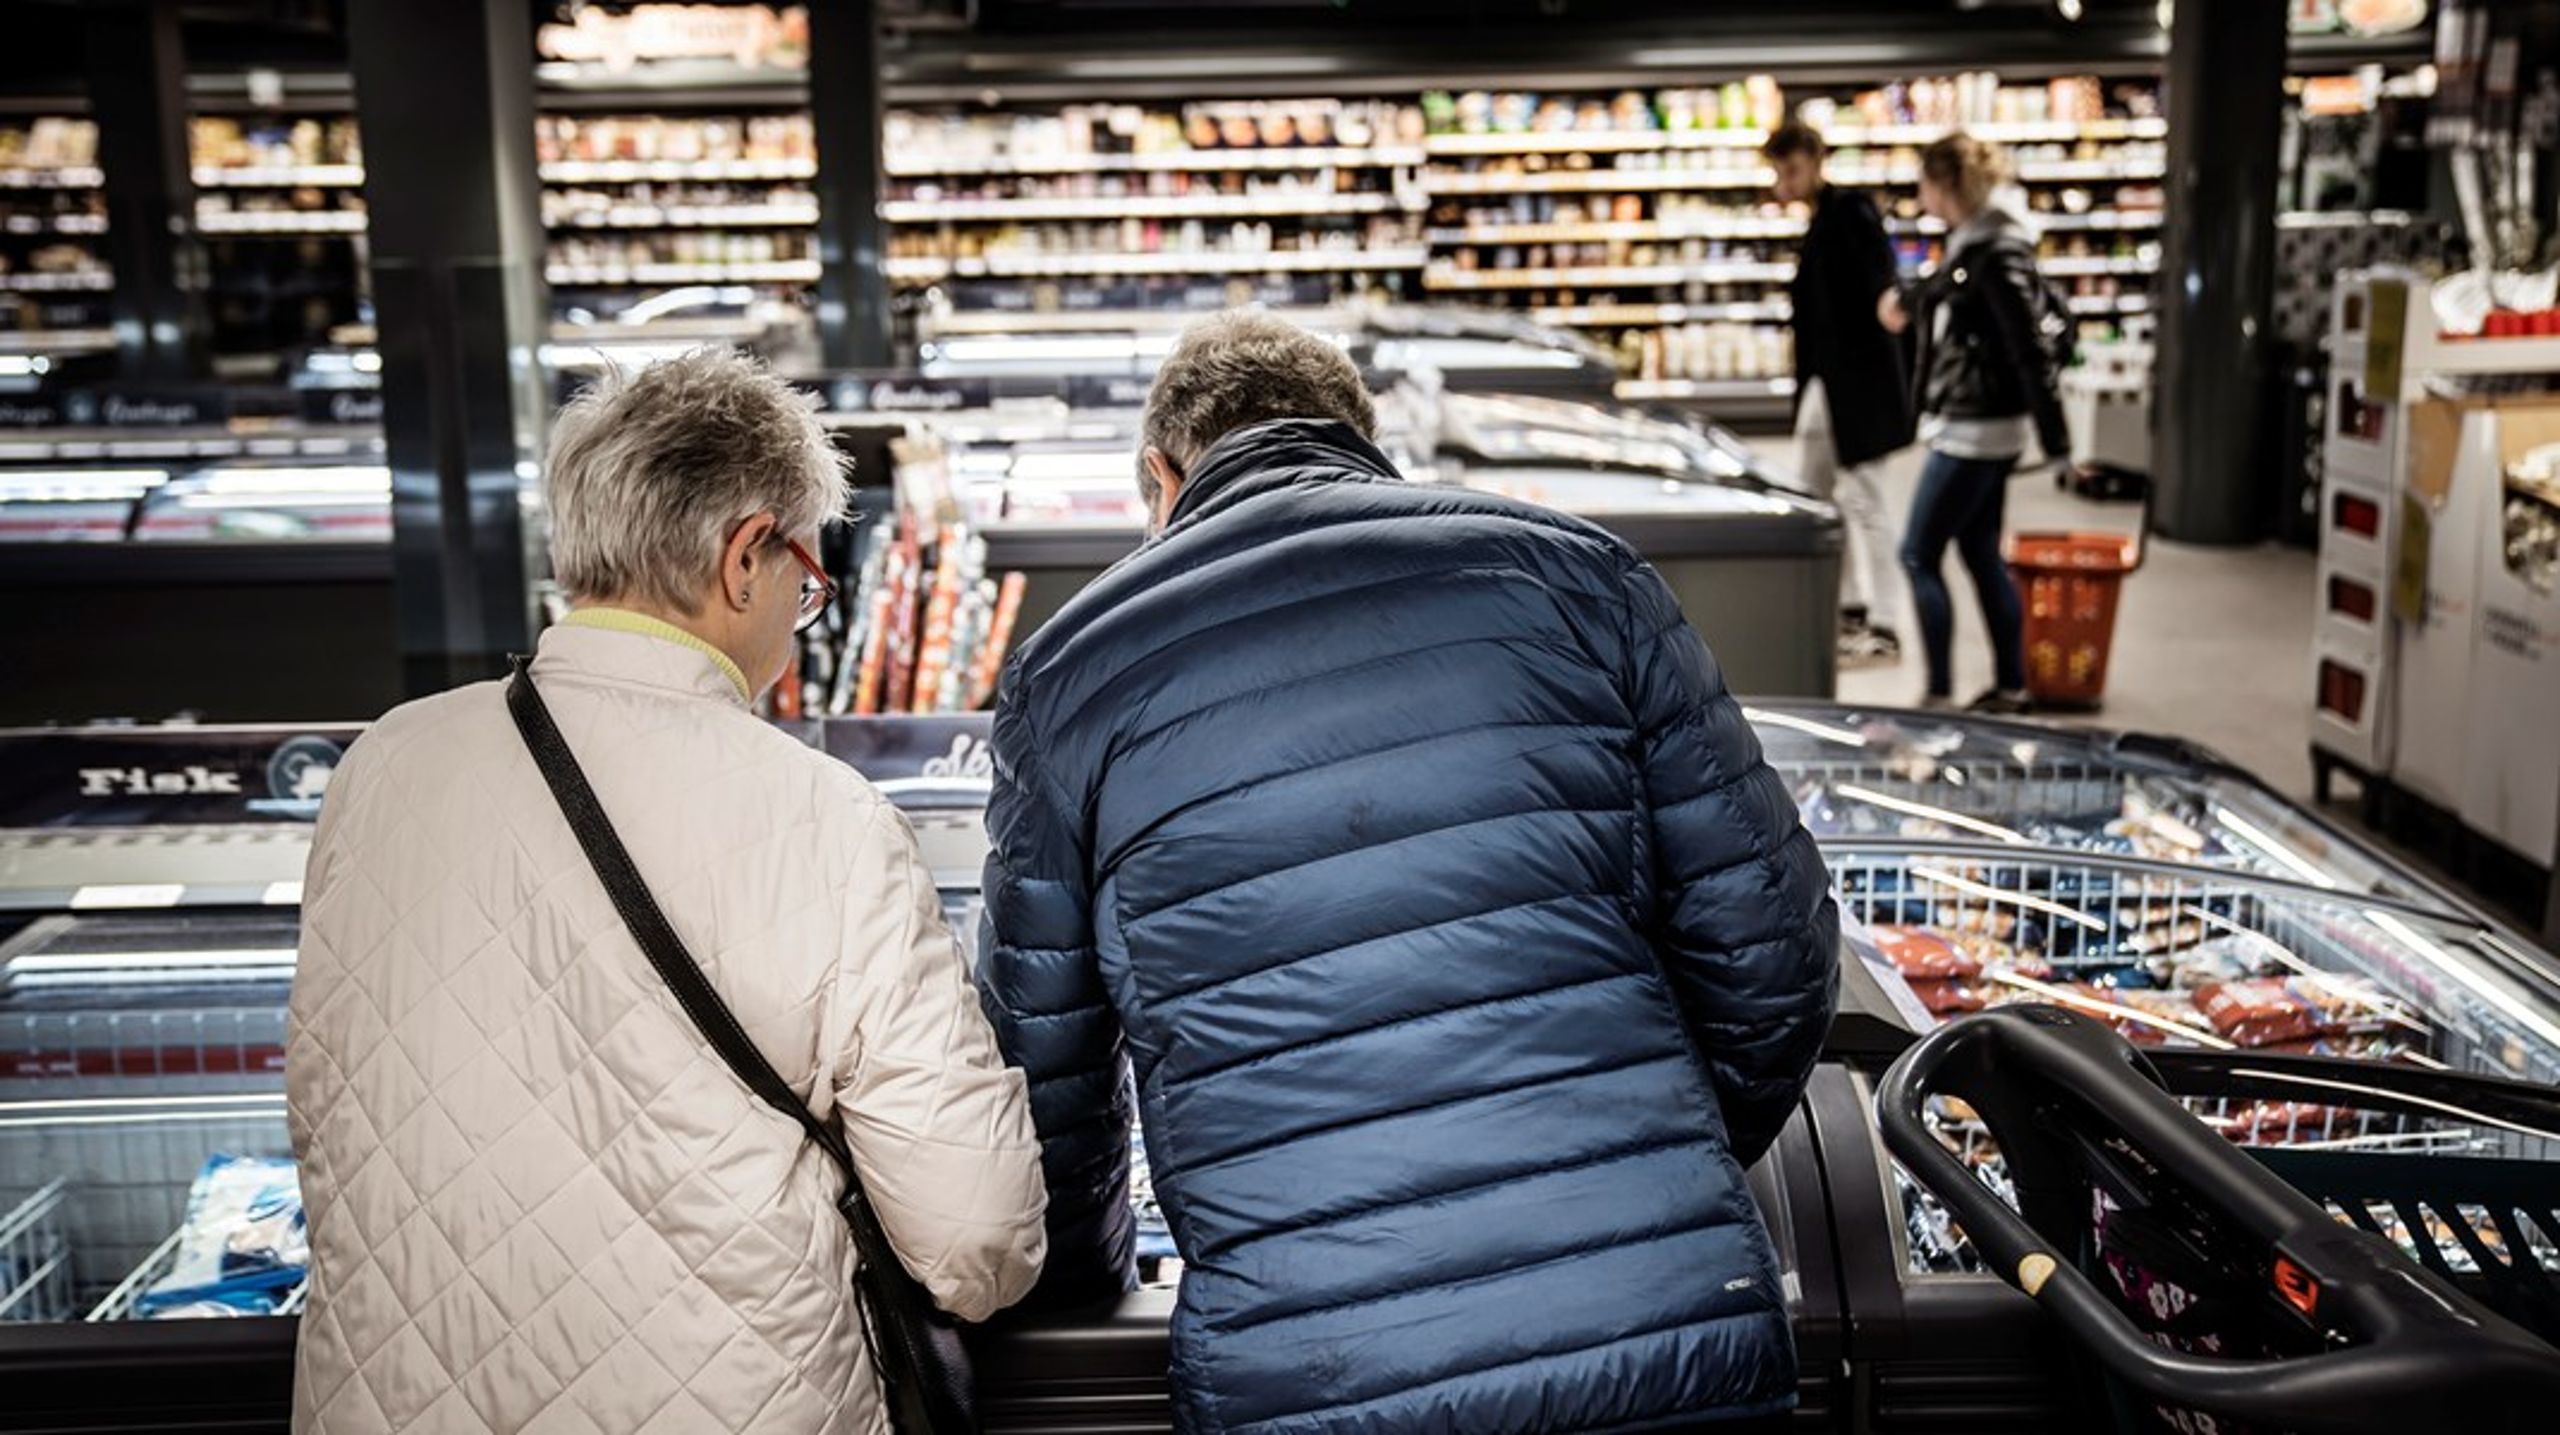 Det er vigtigt at have øje for brugerne og udvikle fødevarer,&nbsp;som ikke bare har et lavt klimaaftryk, men som også ryger i kurven i supermarkedet, skriver Anette Engelund Friis &amp; Erik Bisgaard Madsen. (Arkivfoto)<br>